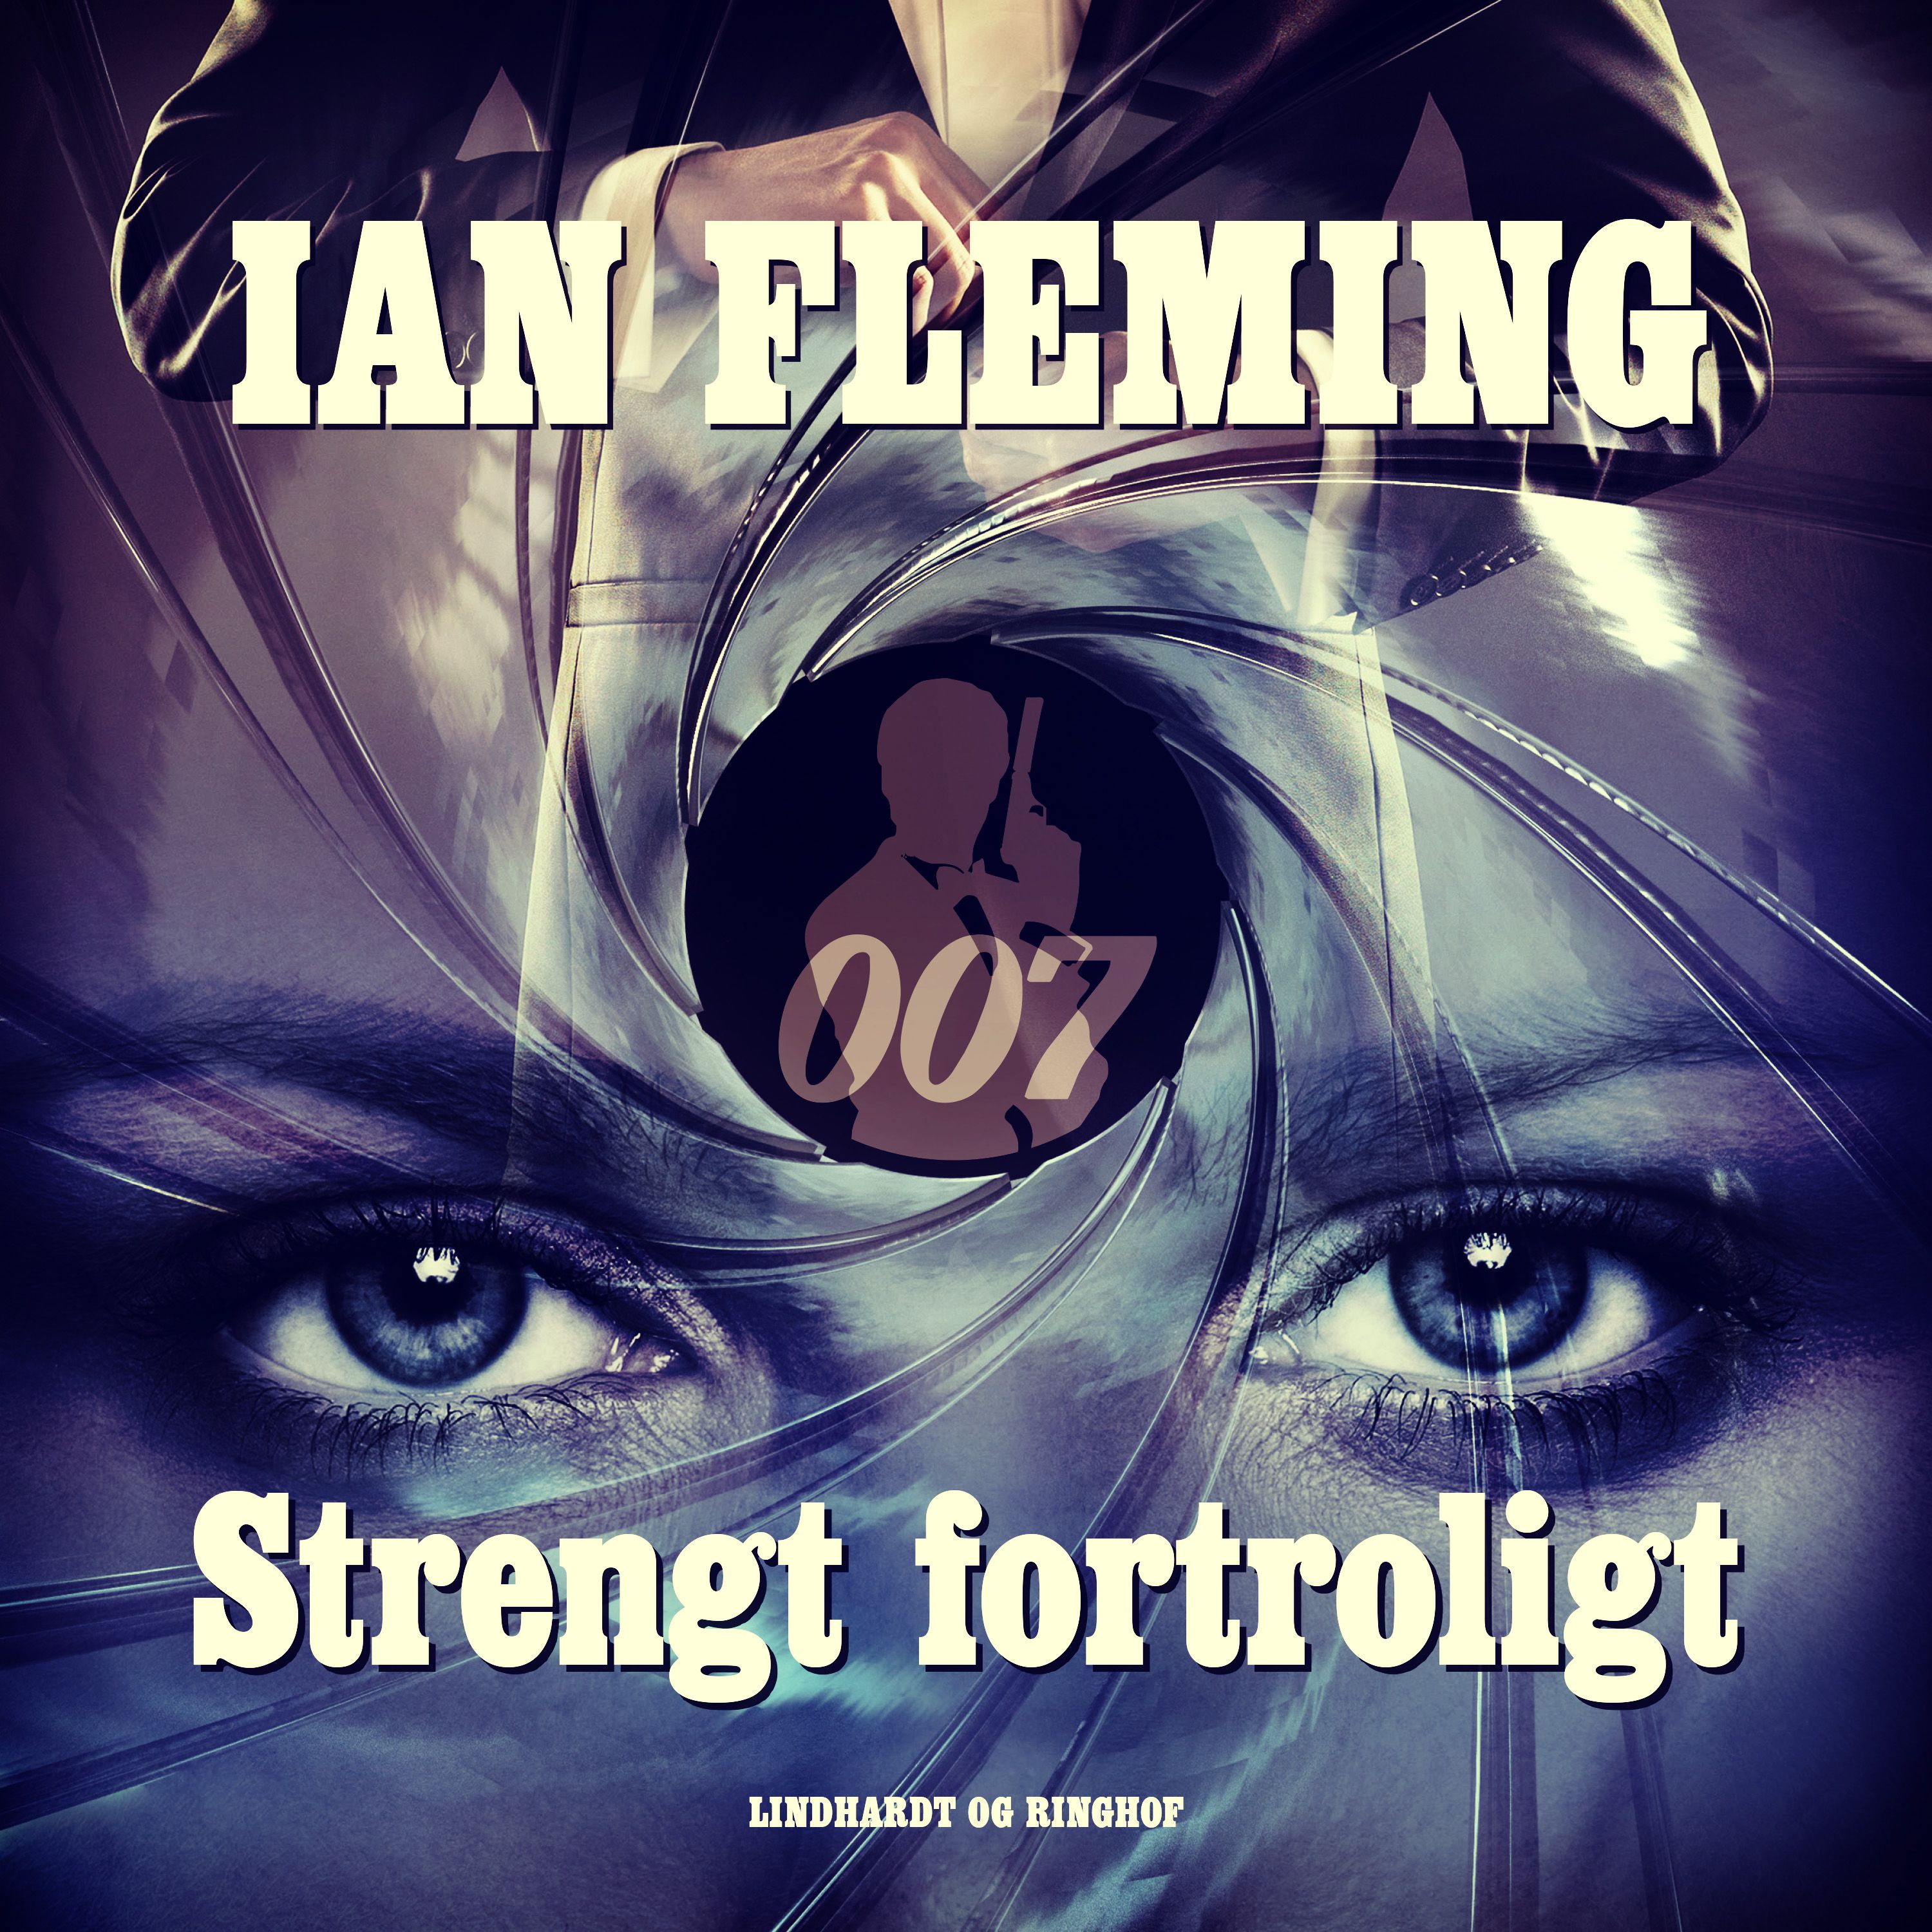 Strengt fortroligt, ljudbok av Ian Fleming